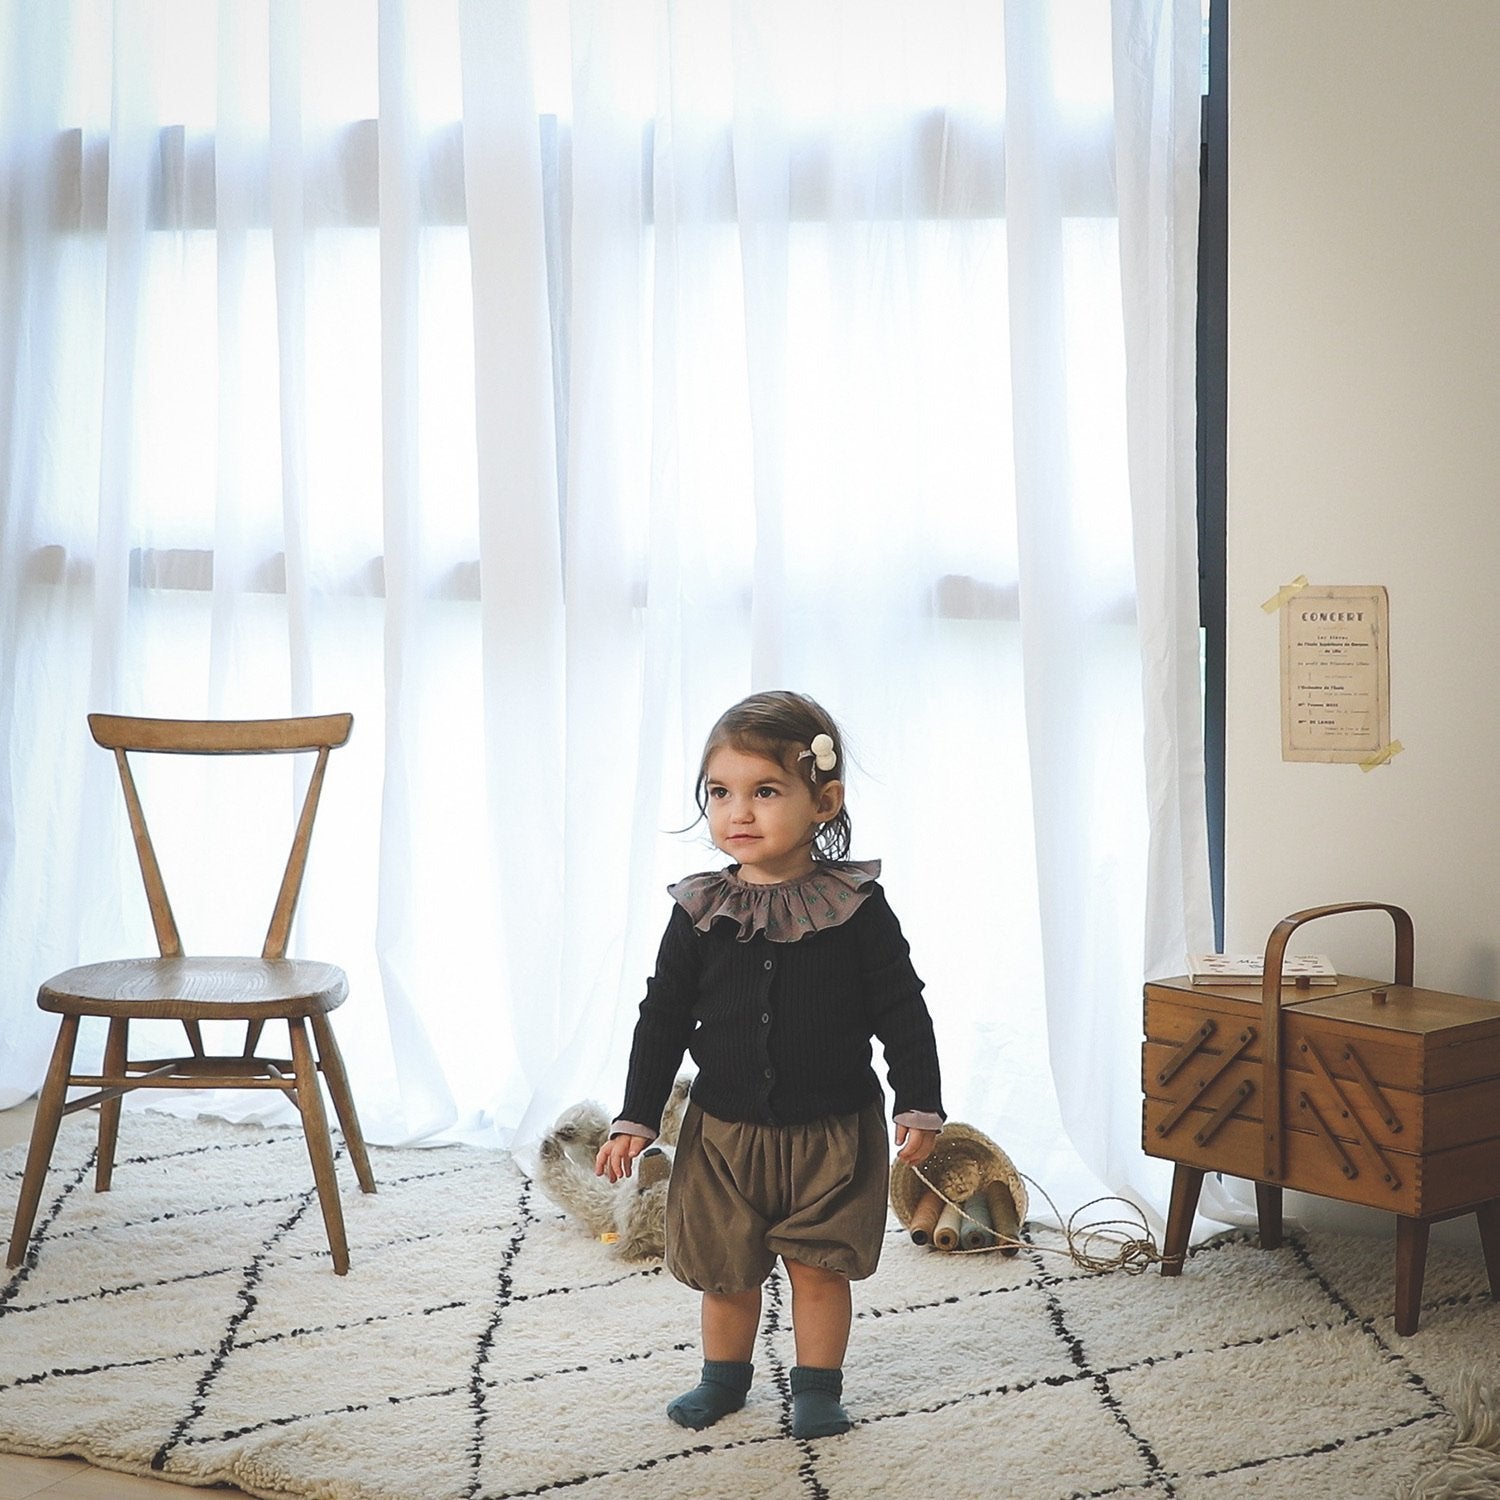 Plum Rüschen Kragen find Stylish Fashion for Little People- at Little Foxx Concept Store